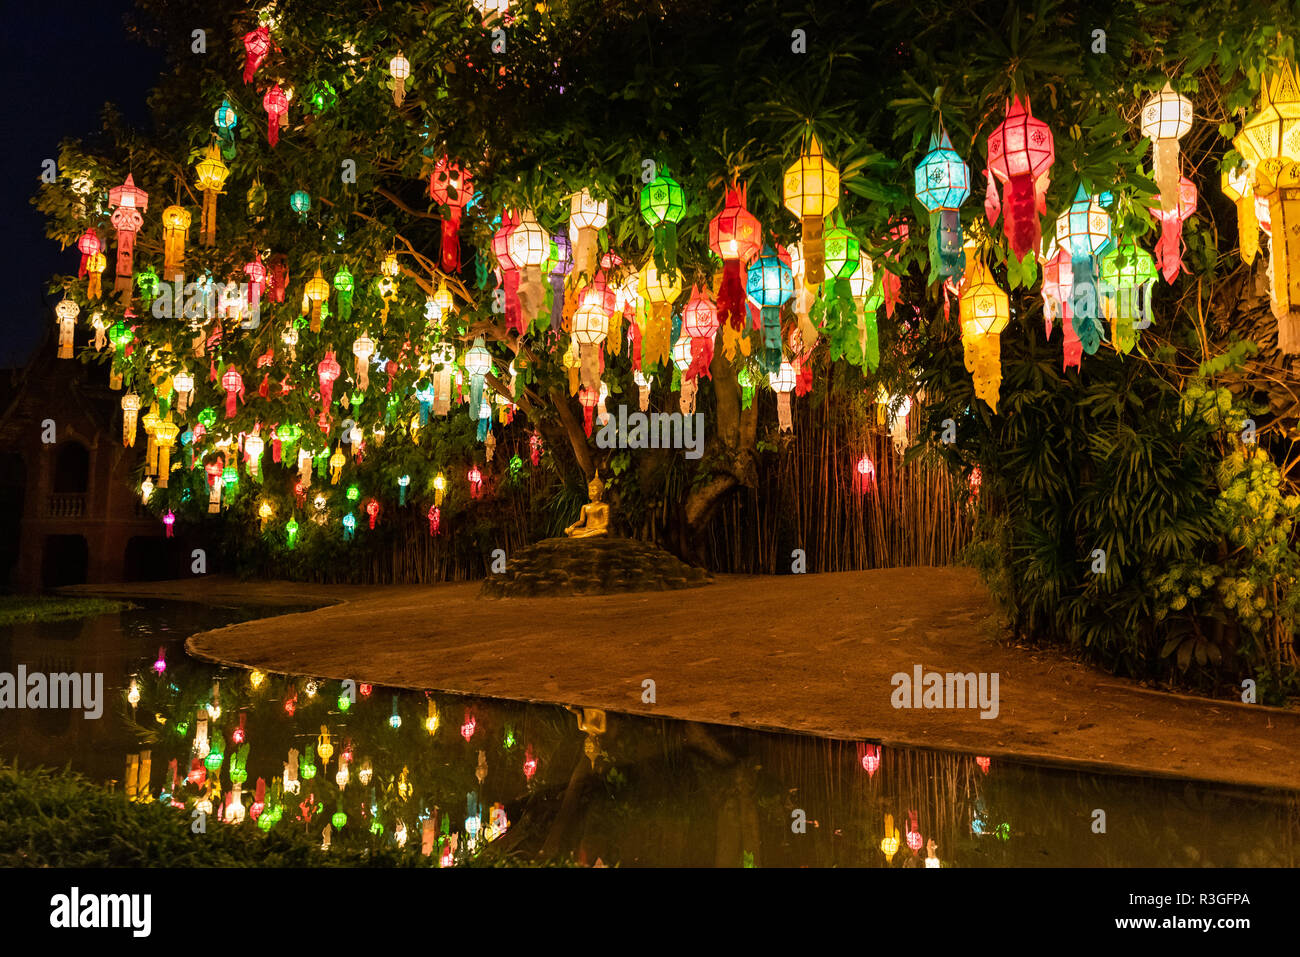 Lanternes feu colorés entourent statue de Bouddha près de pond à la réflexion. Banque D'Images